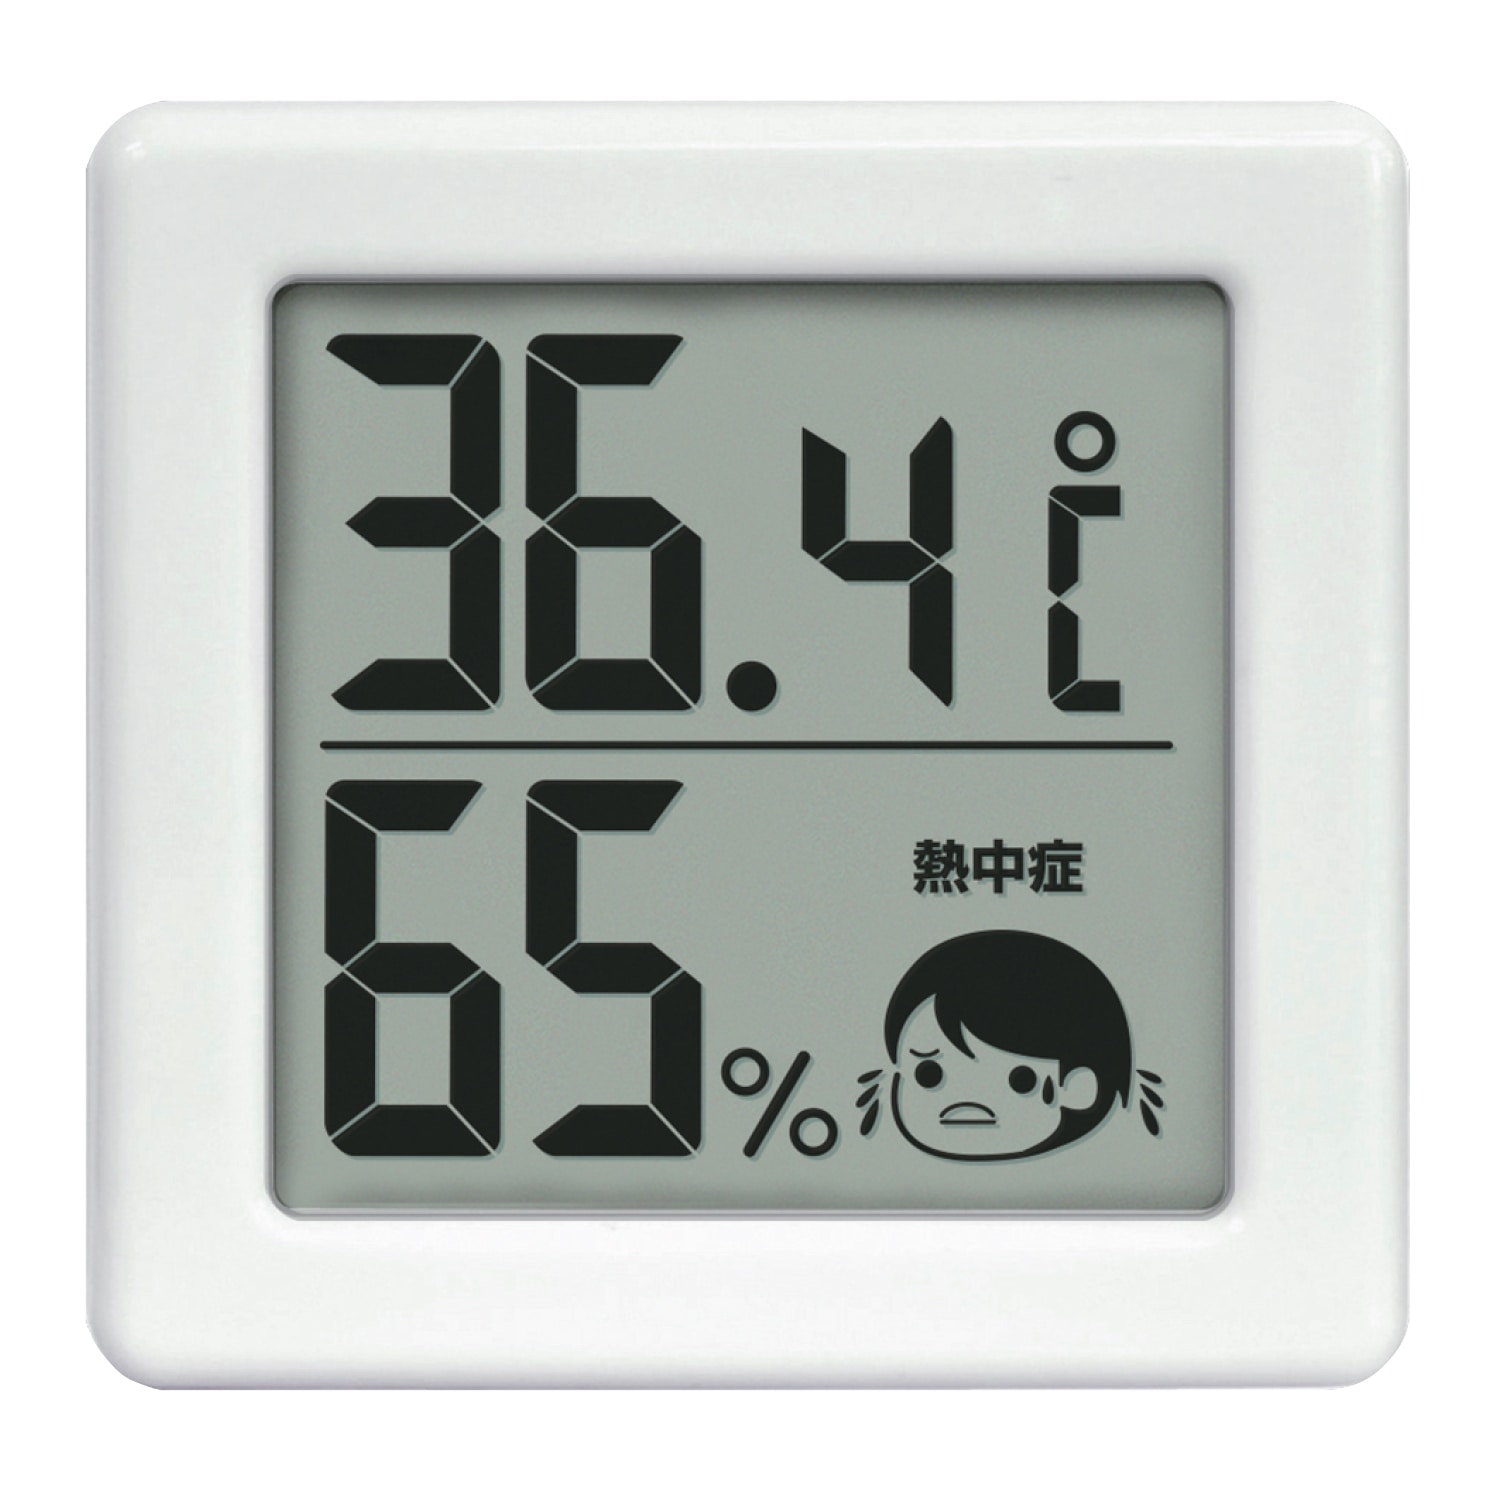 ドリテック デジタル温湿度計